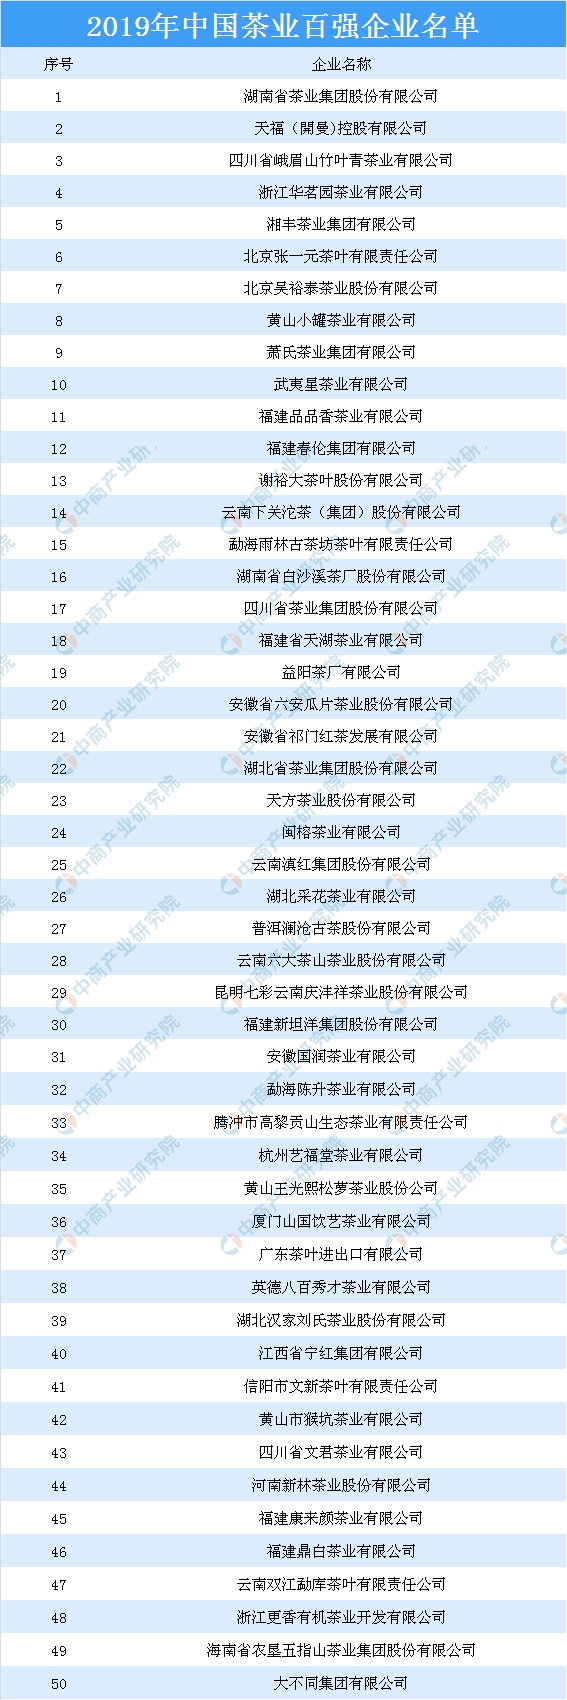 2019茶叶排行榜_2019中国茶业百强企业名单中国茶叶企业排行榜前十强